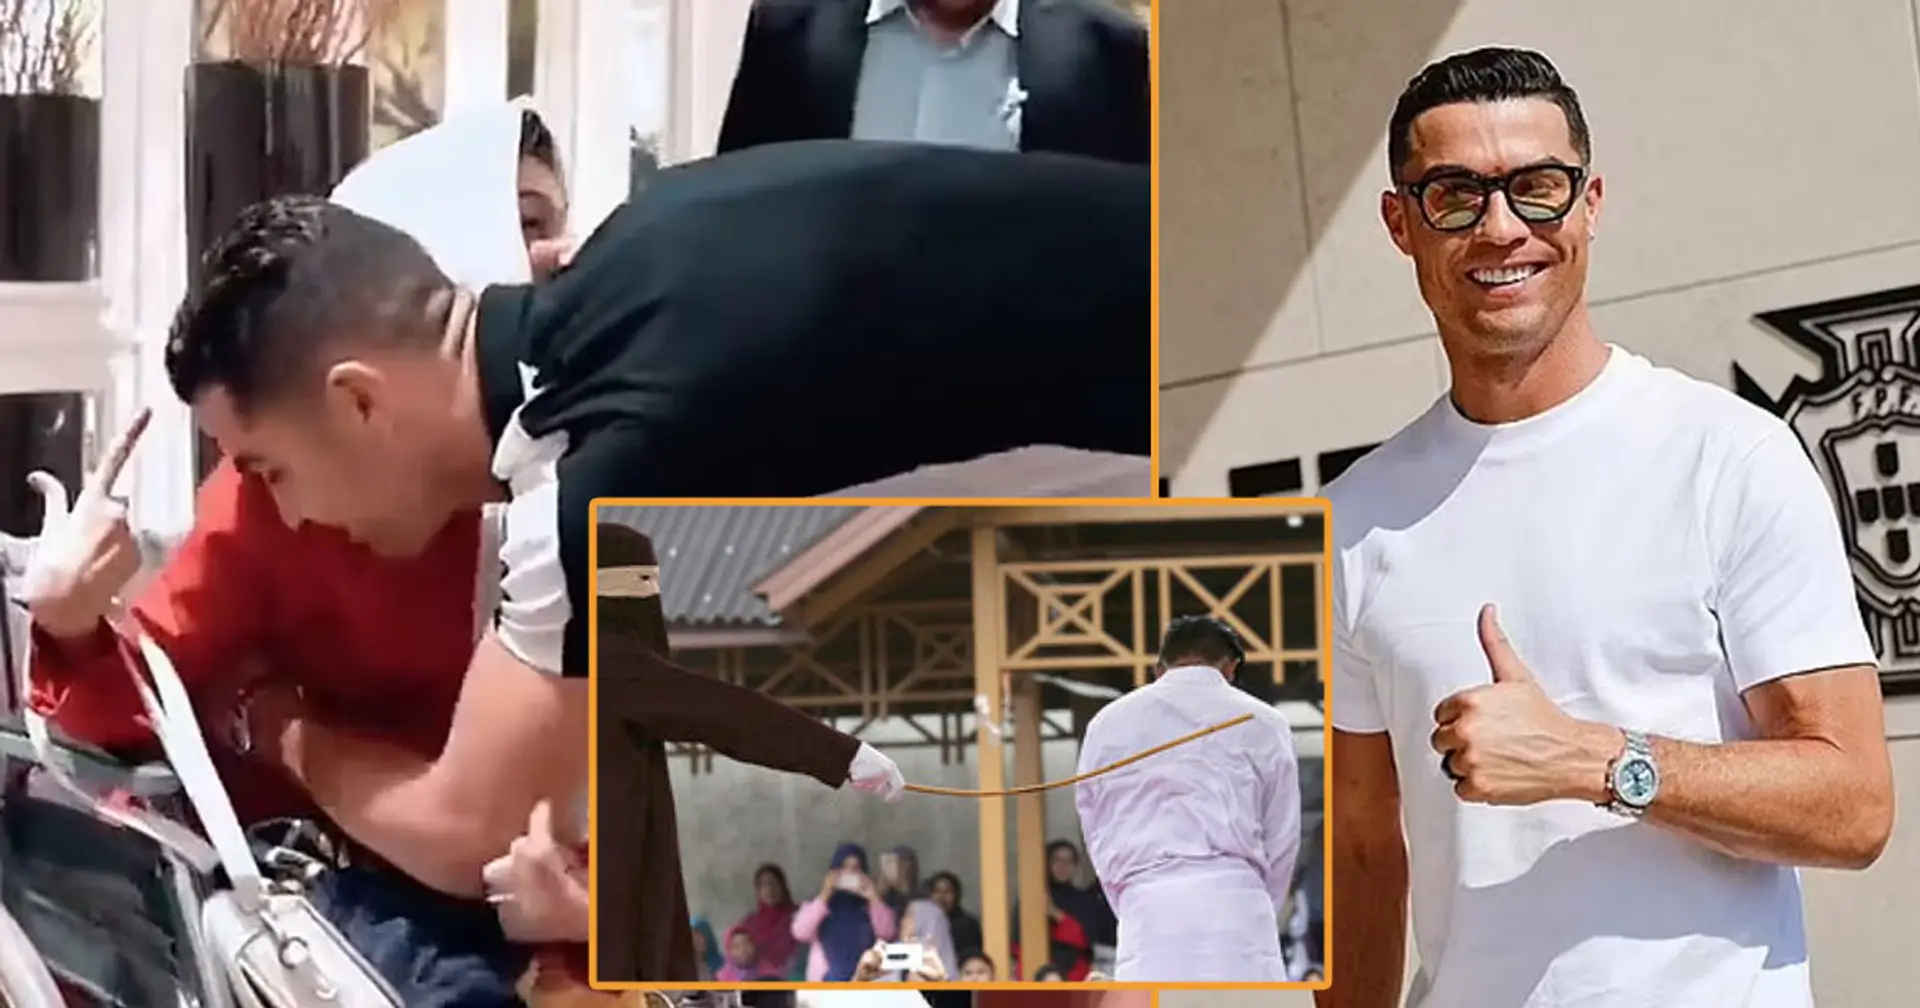 ¿Realmente recibirá Cristiano Ronaldo 99 latigazos en Irán por 'adulterio'?